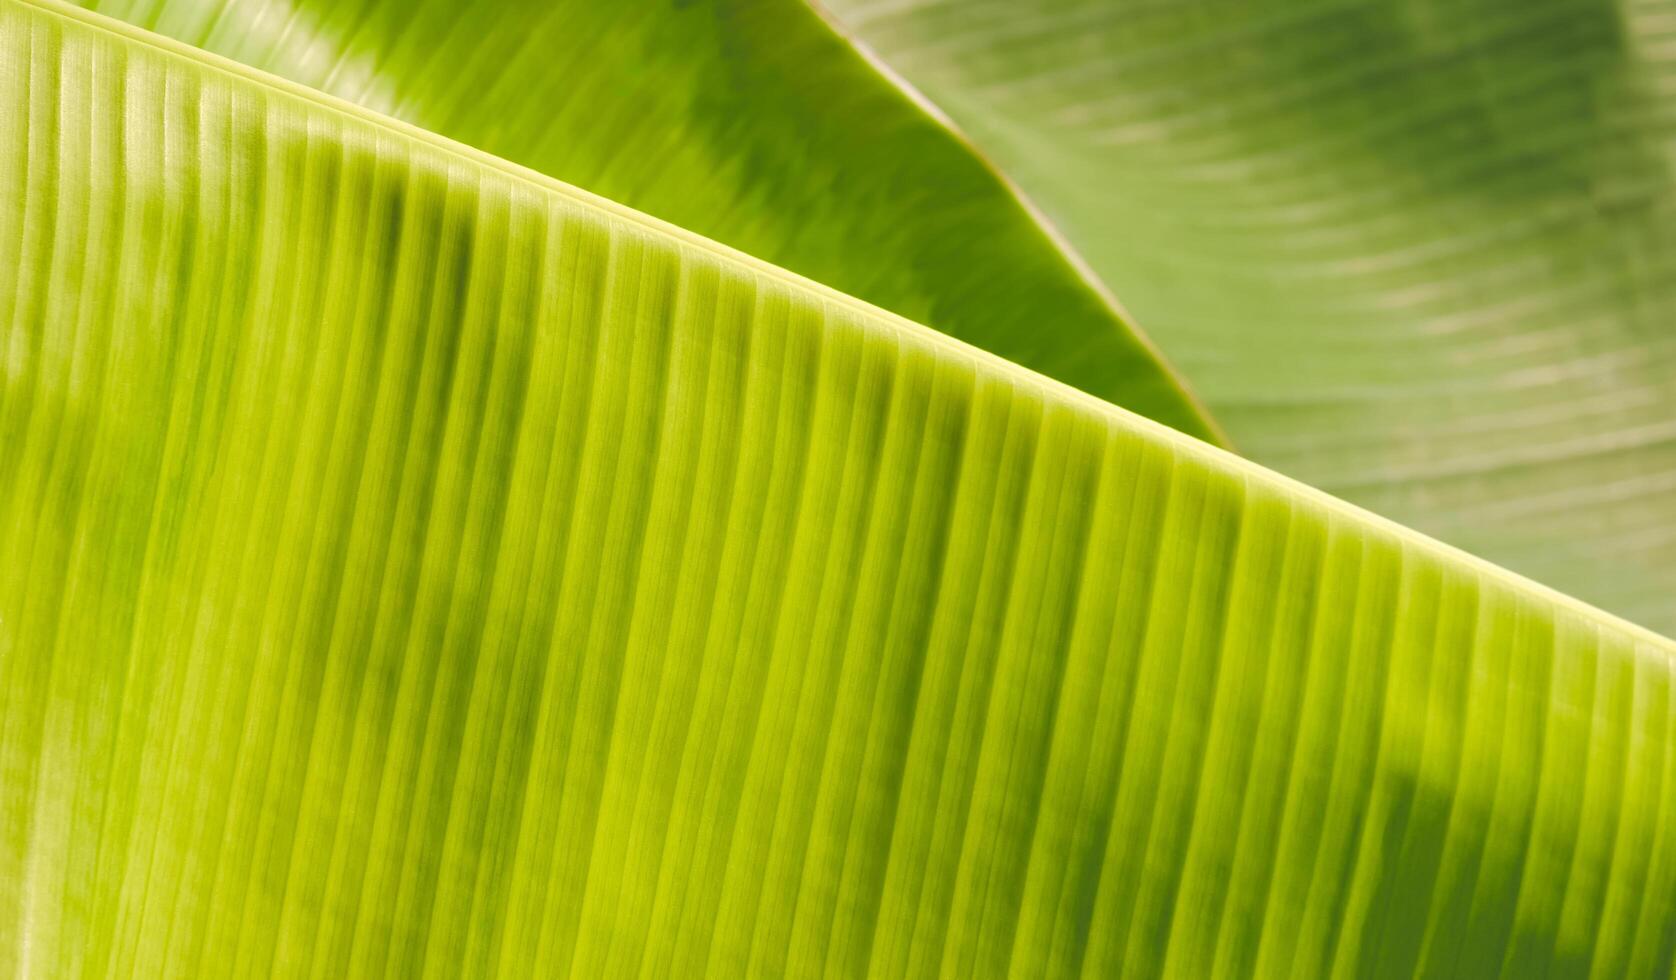 bakgrund och textur av grön banan löv med solljus på yta, naturlig lövverk bakgrund begrepp foto